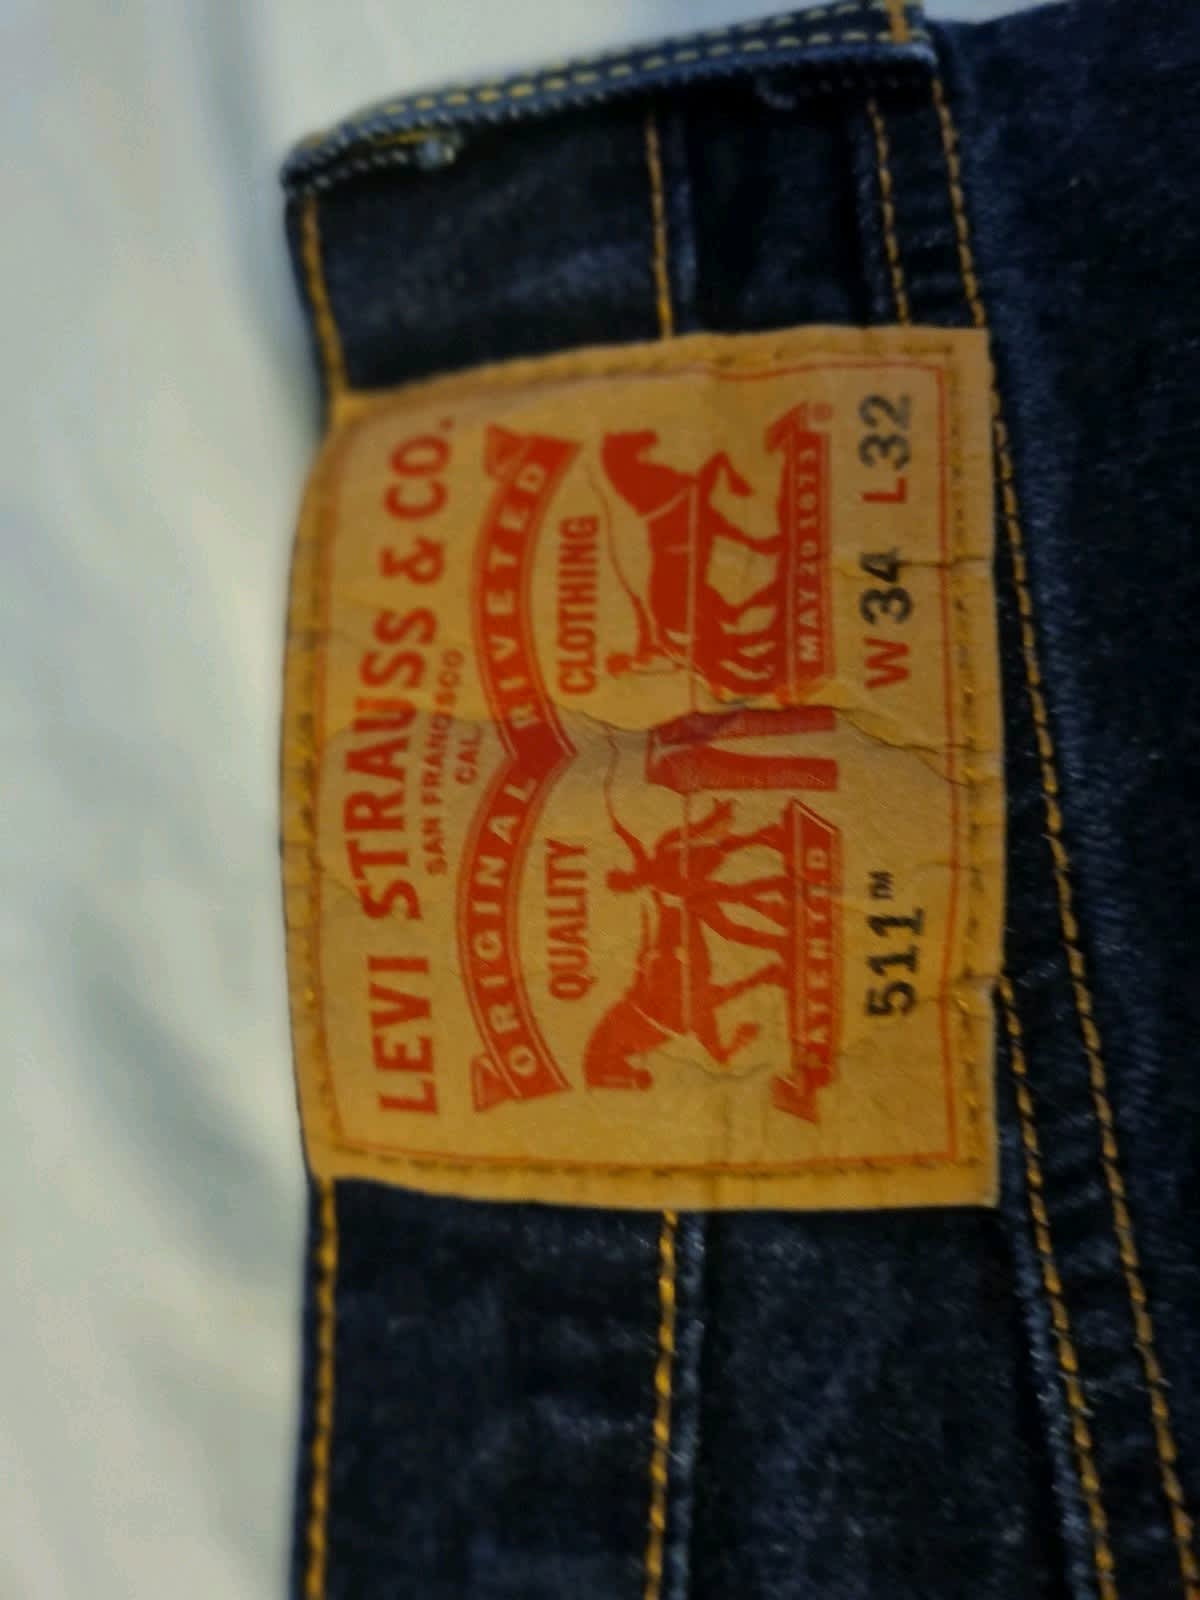 Louis Vuitton men's jeans size 32w 38L brands new - Depop